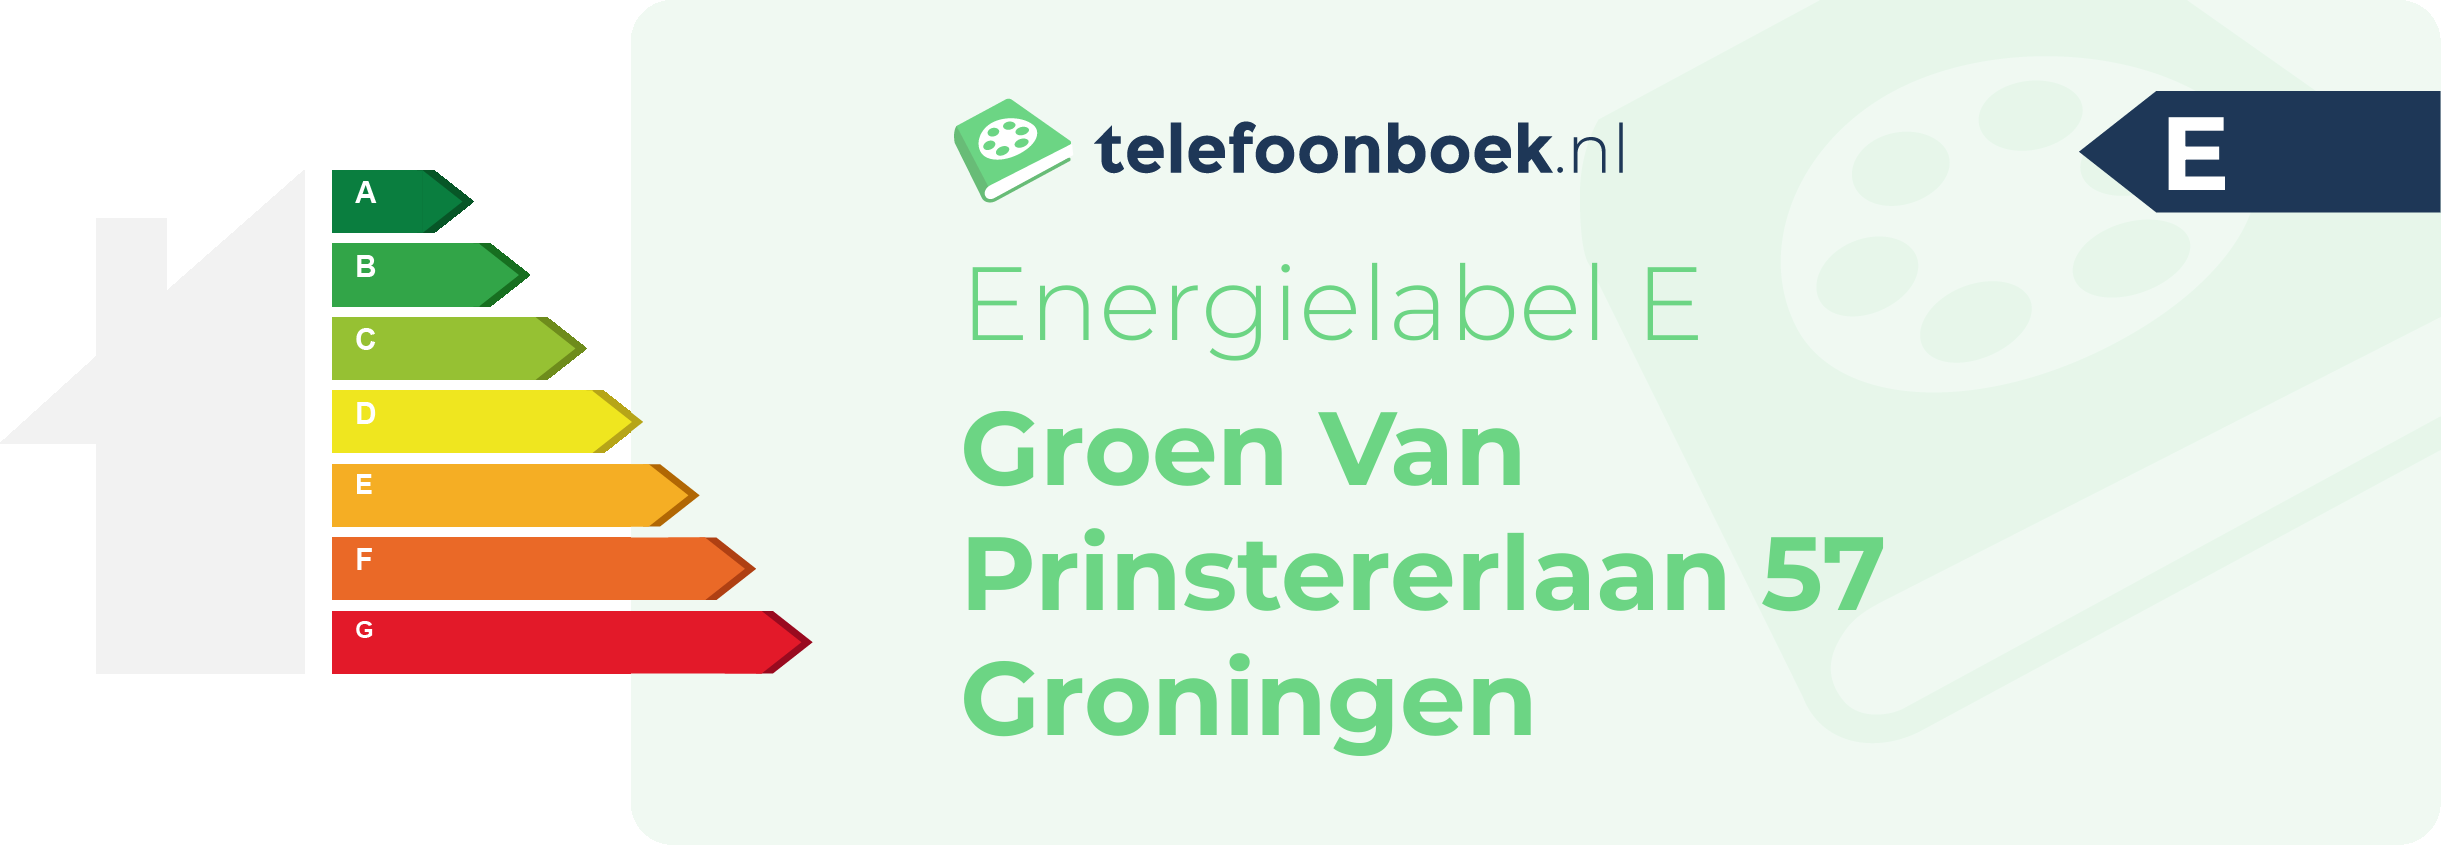 Energielabel Groen Van Prinstererlaan 57 Groningen